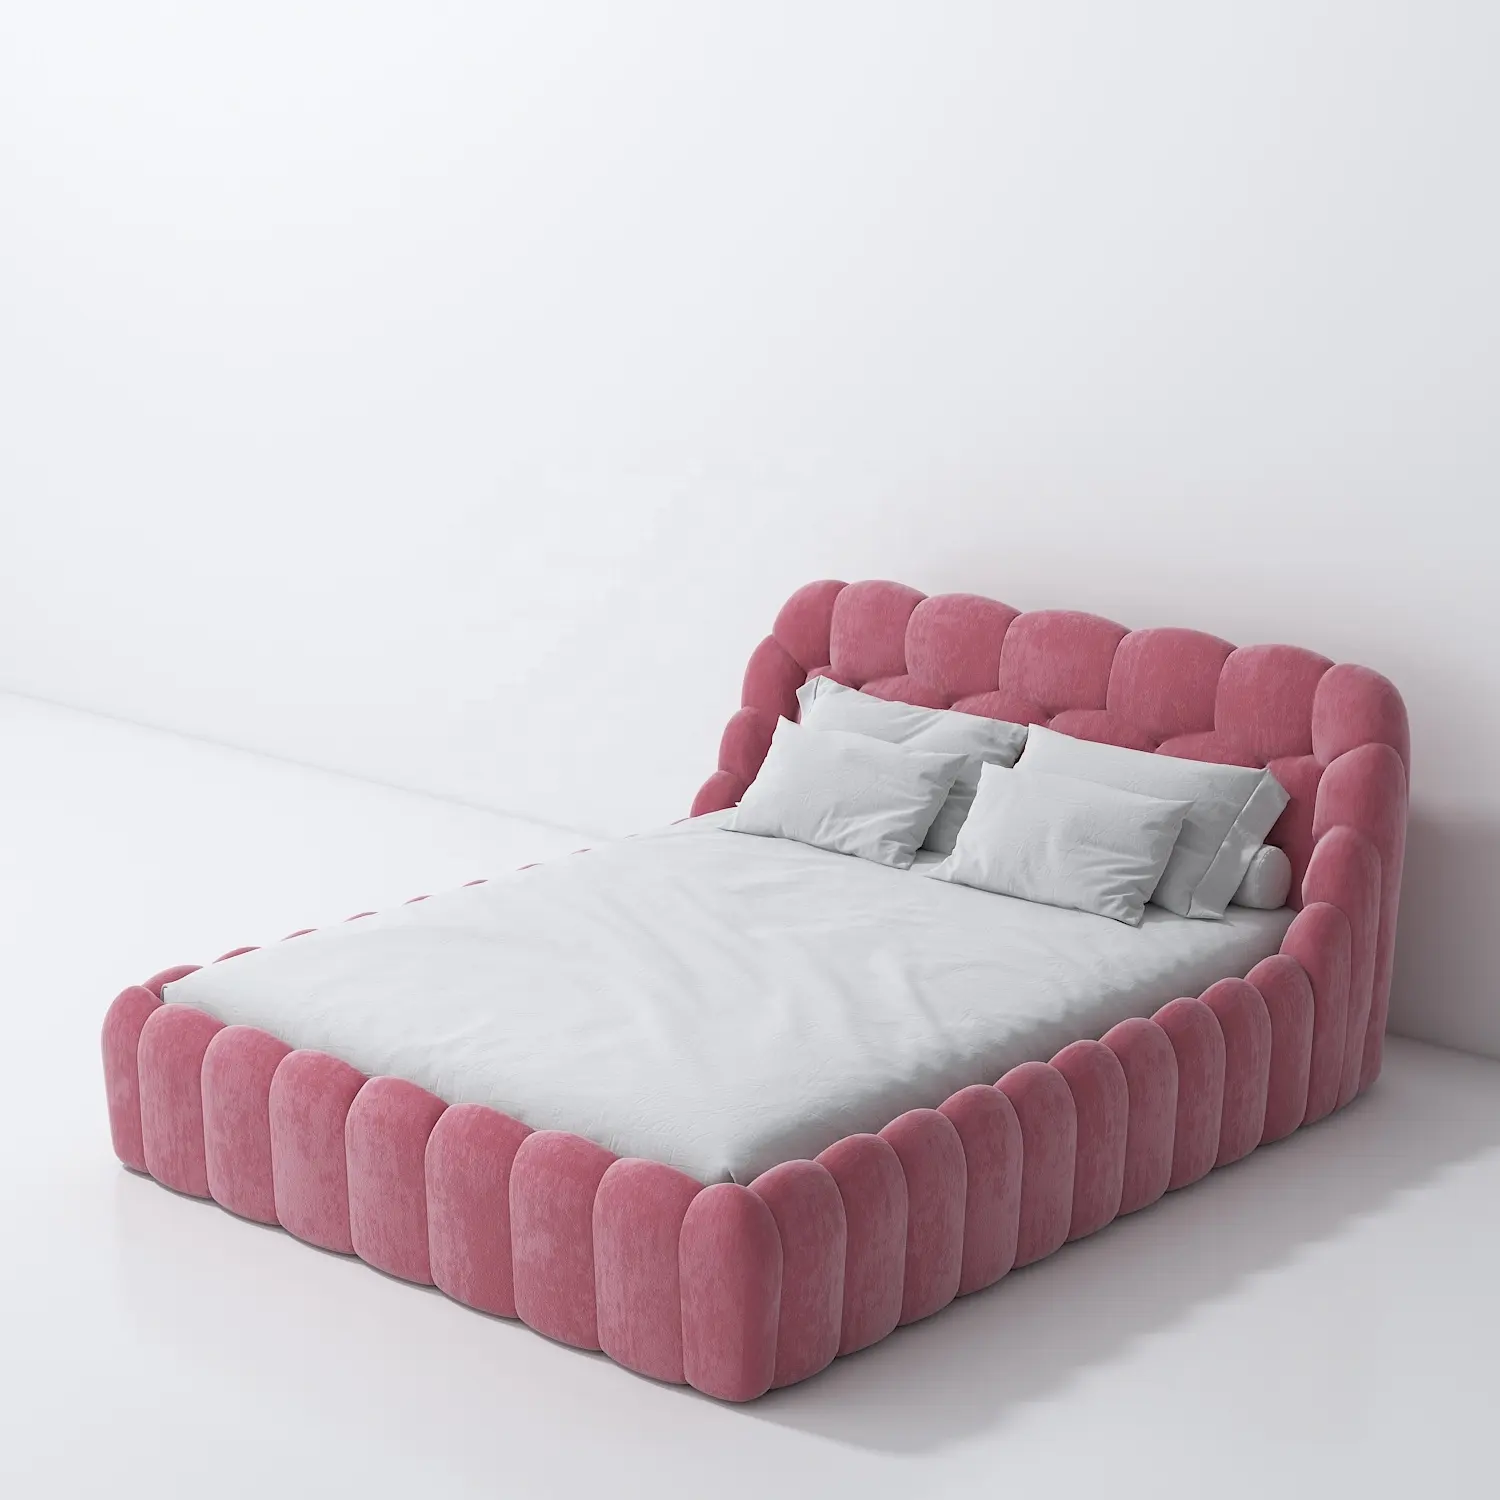 VASAGLE Pink Princess Schlafzimmer möbel starke und langlebige Betten Full/Queen Size maßge schneiderte Stoff polster Bett rahmen